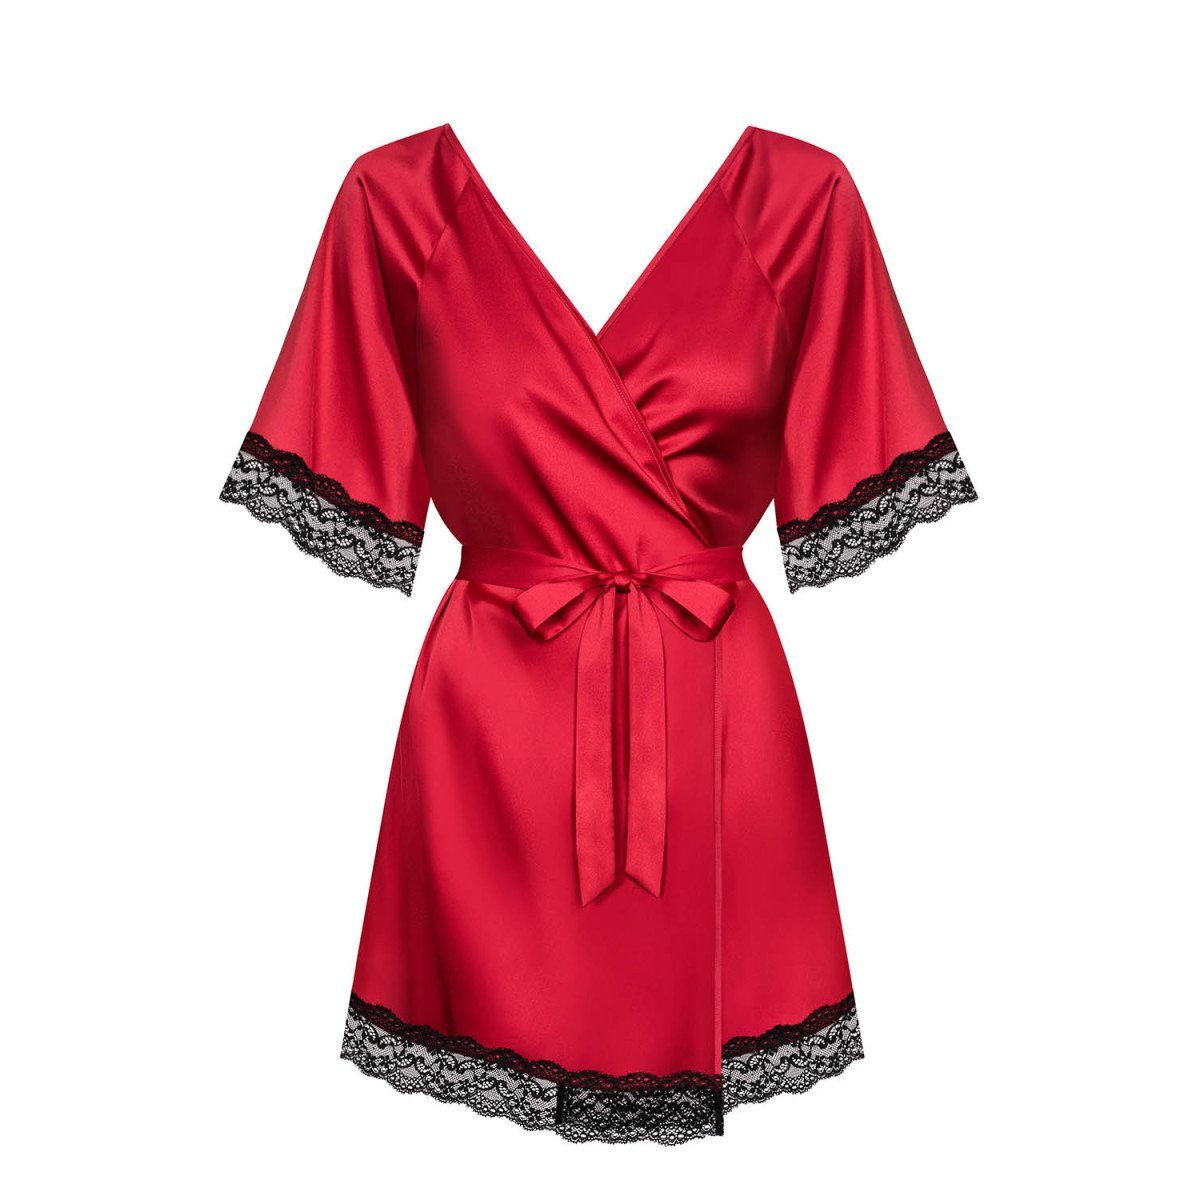 OB robe - Sensuelia Obsessive (S/M,XXL) Nachthemd red